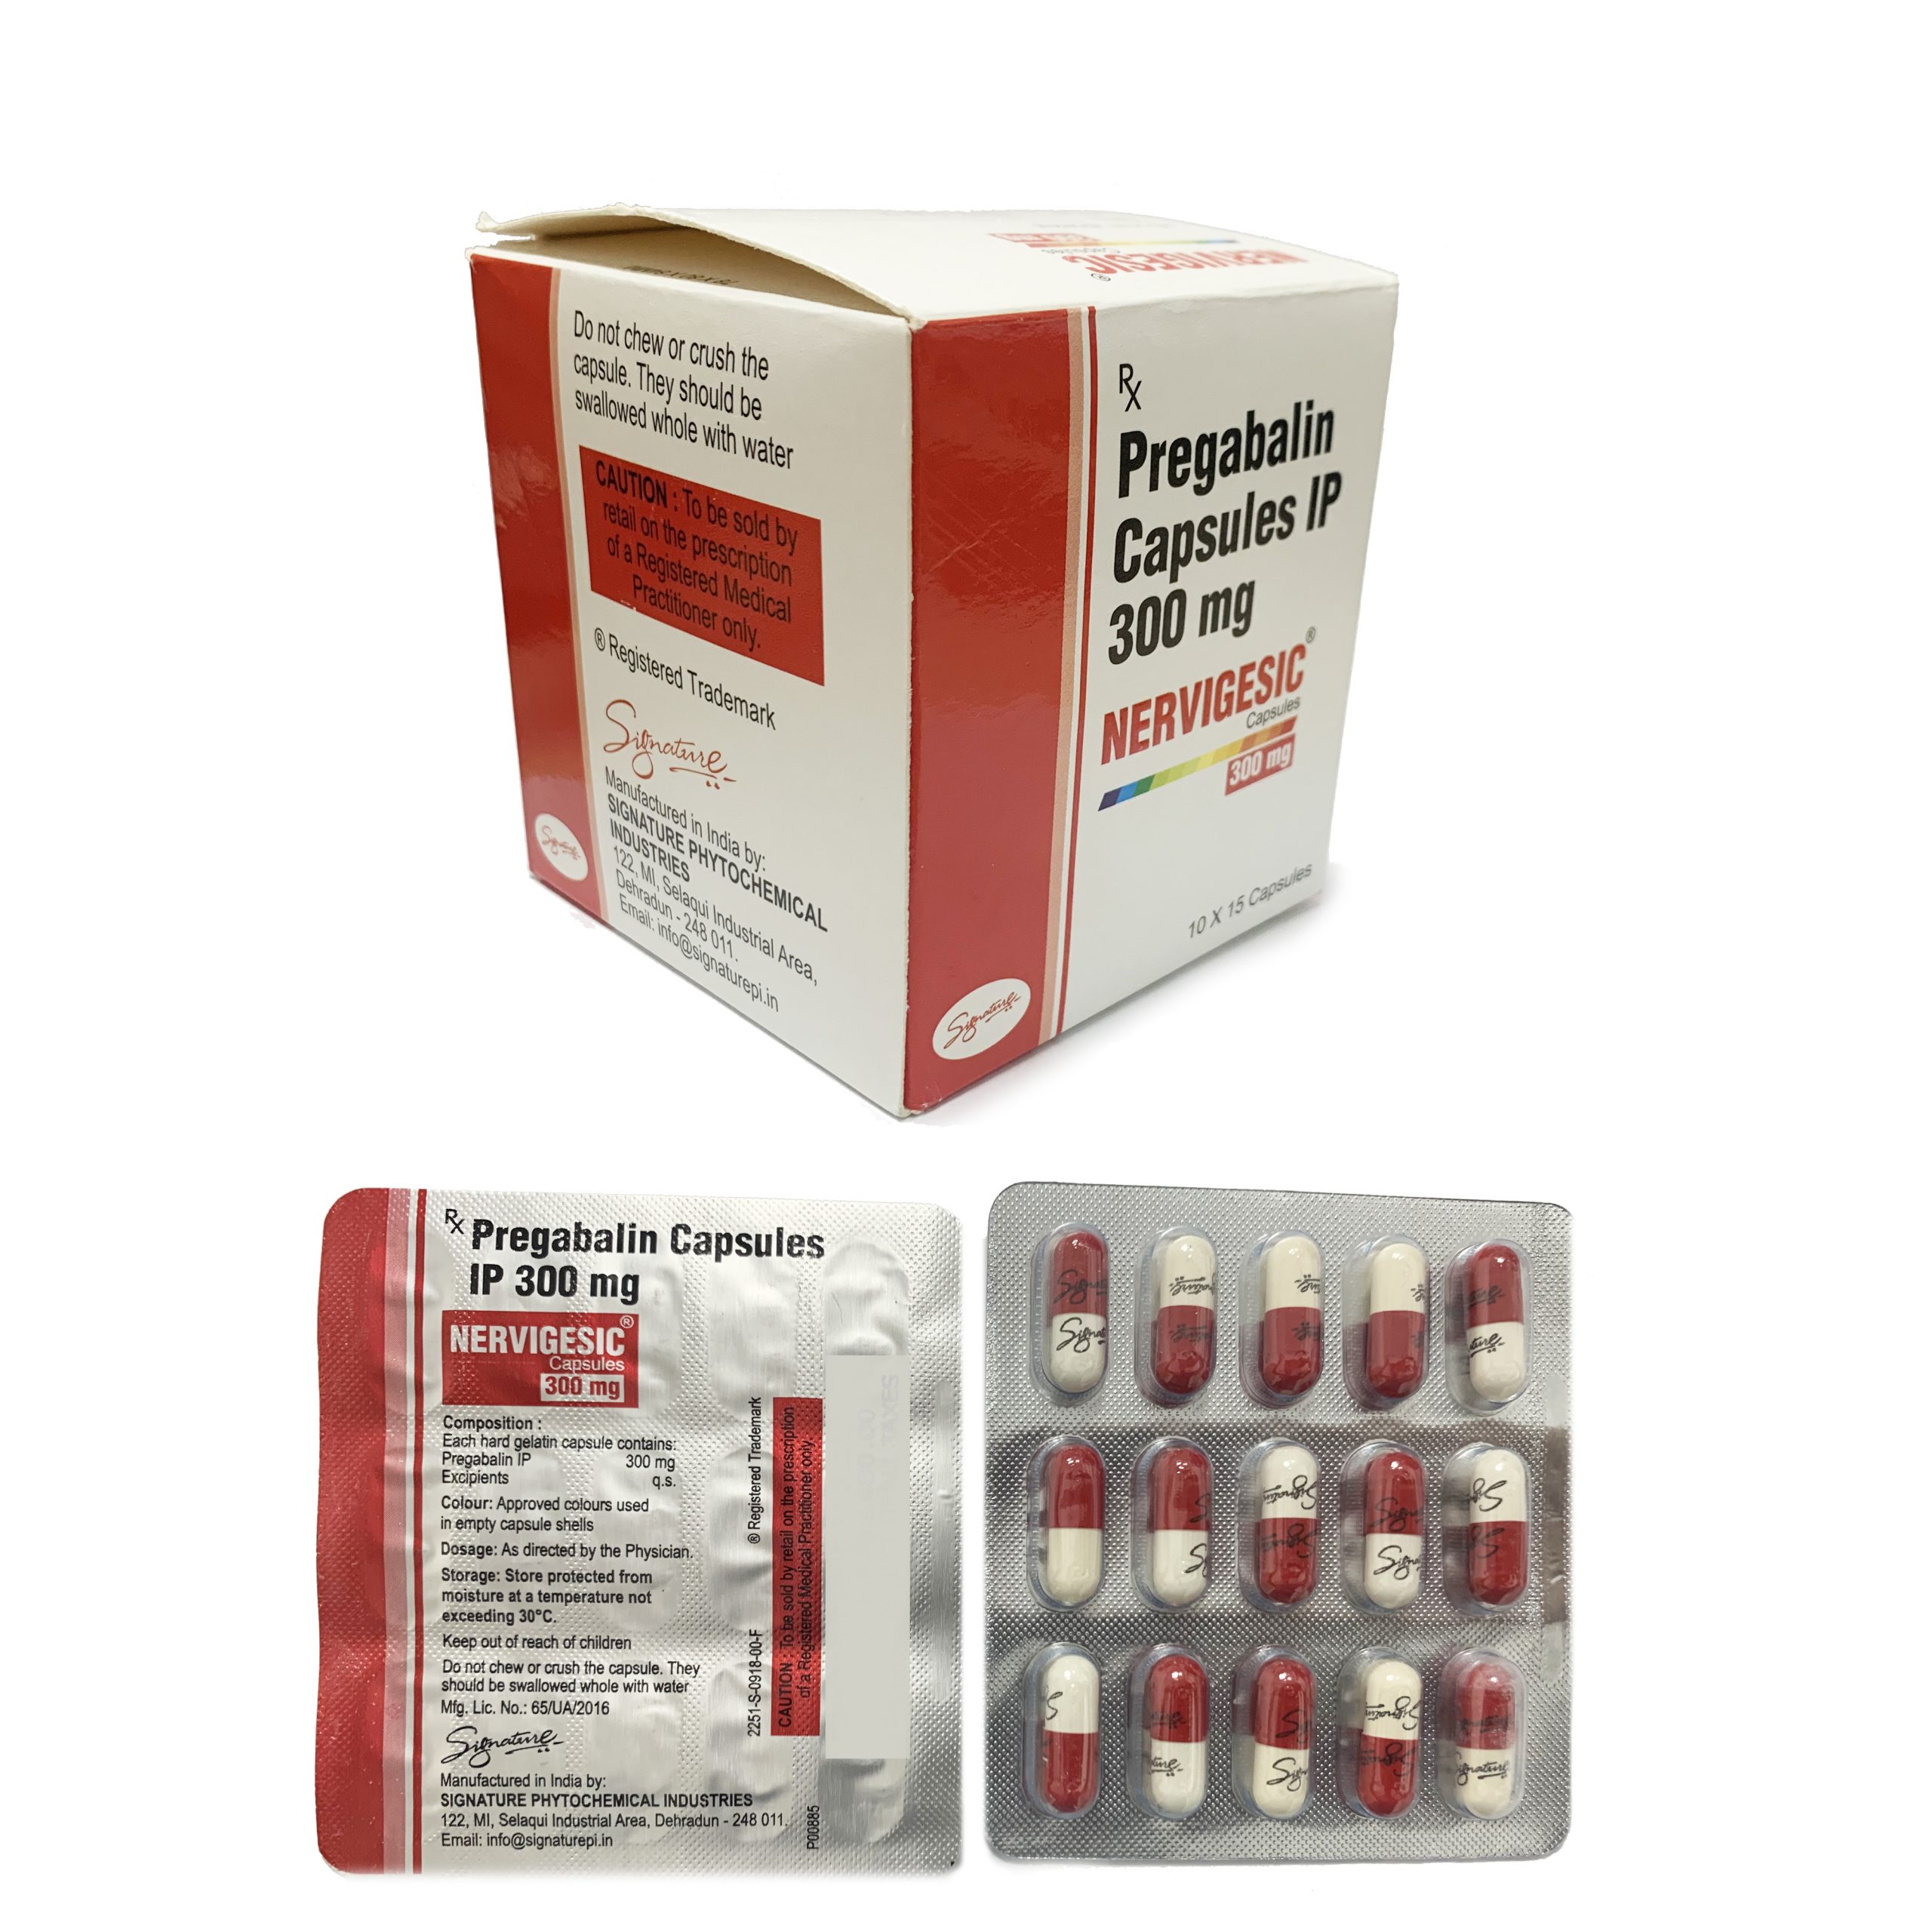 Buy Pregabalin 300mg in UK from Insomnia Tablets